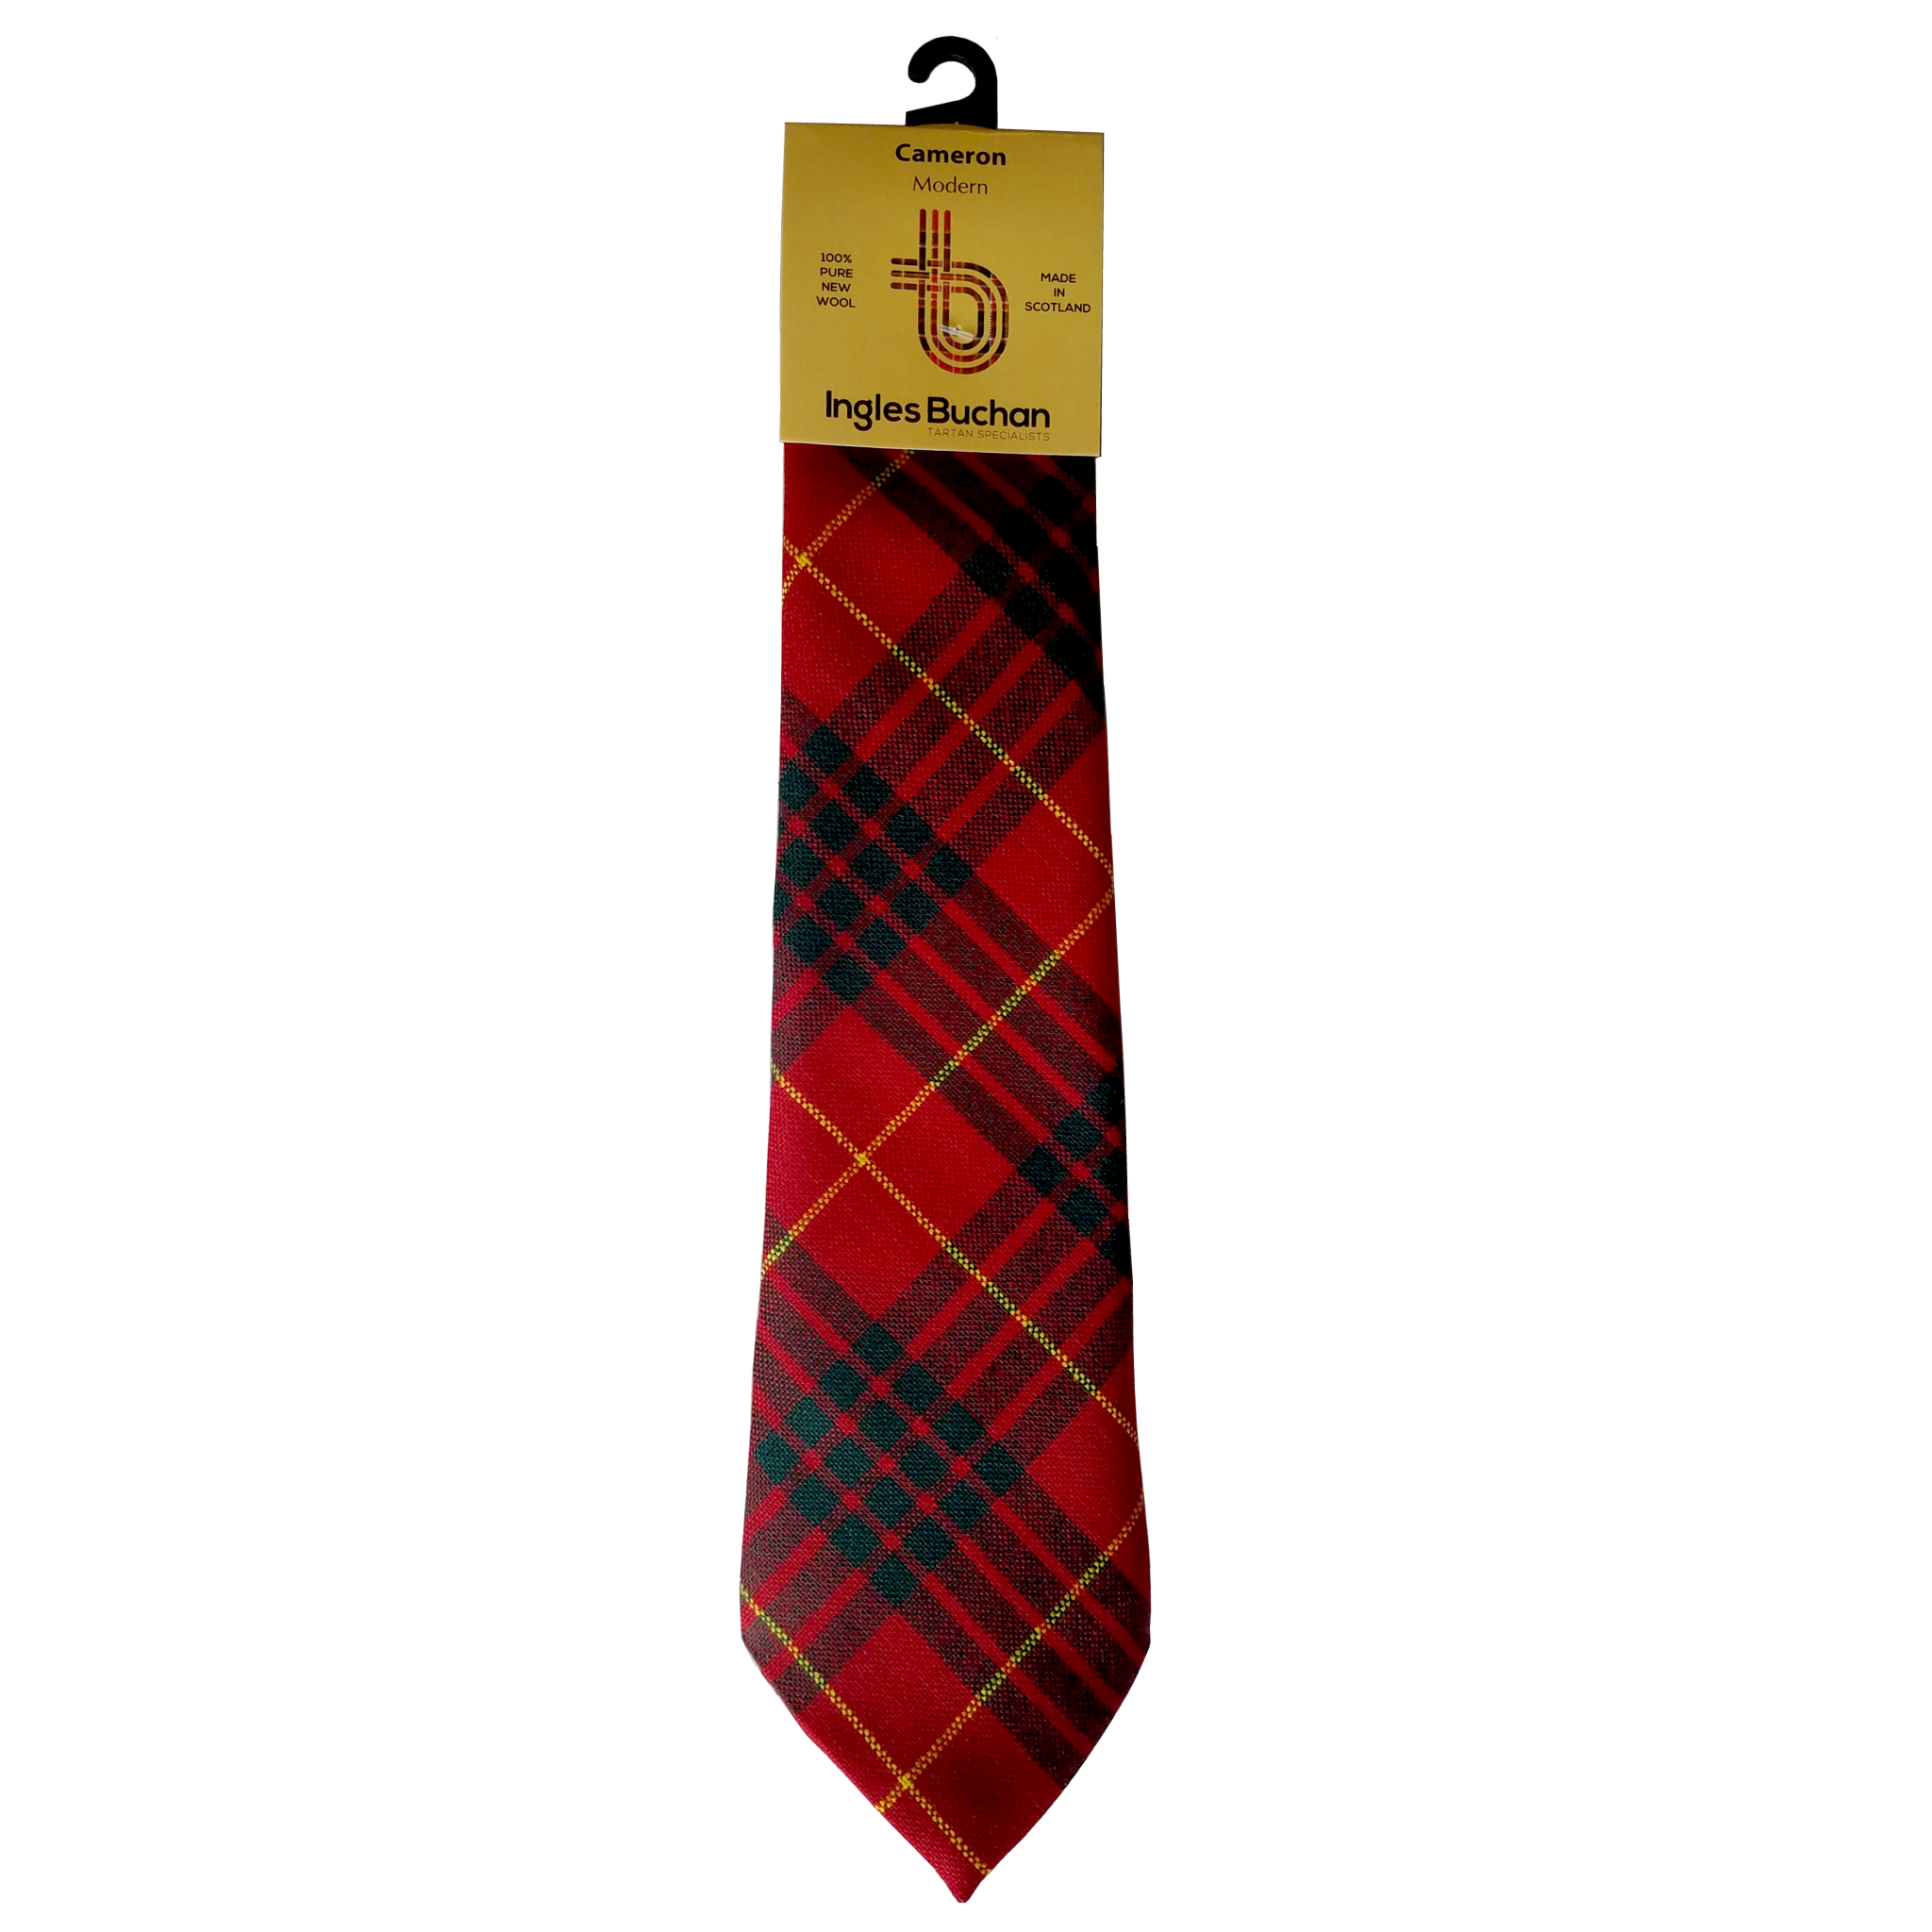 Men's Tartan Tie